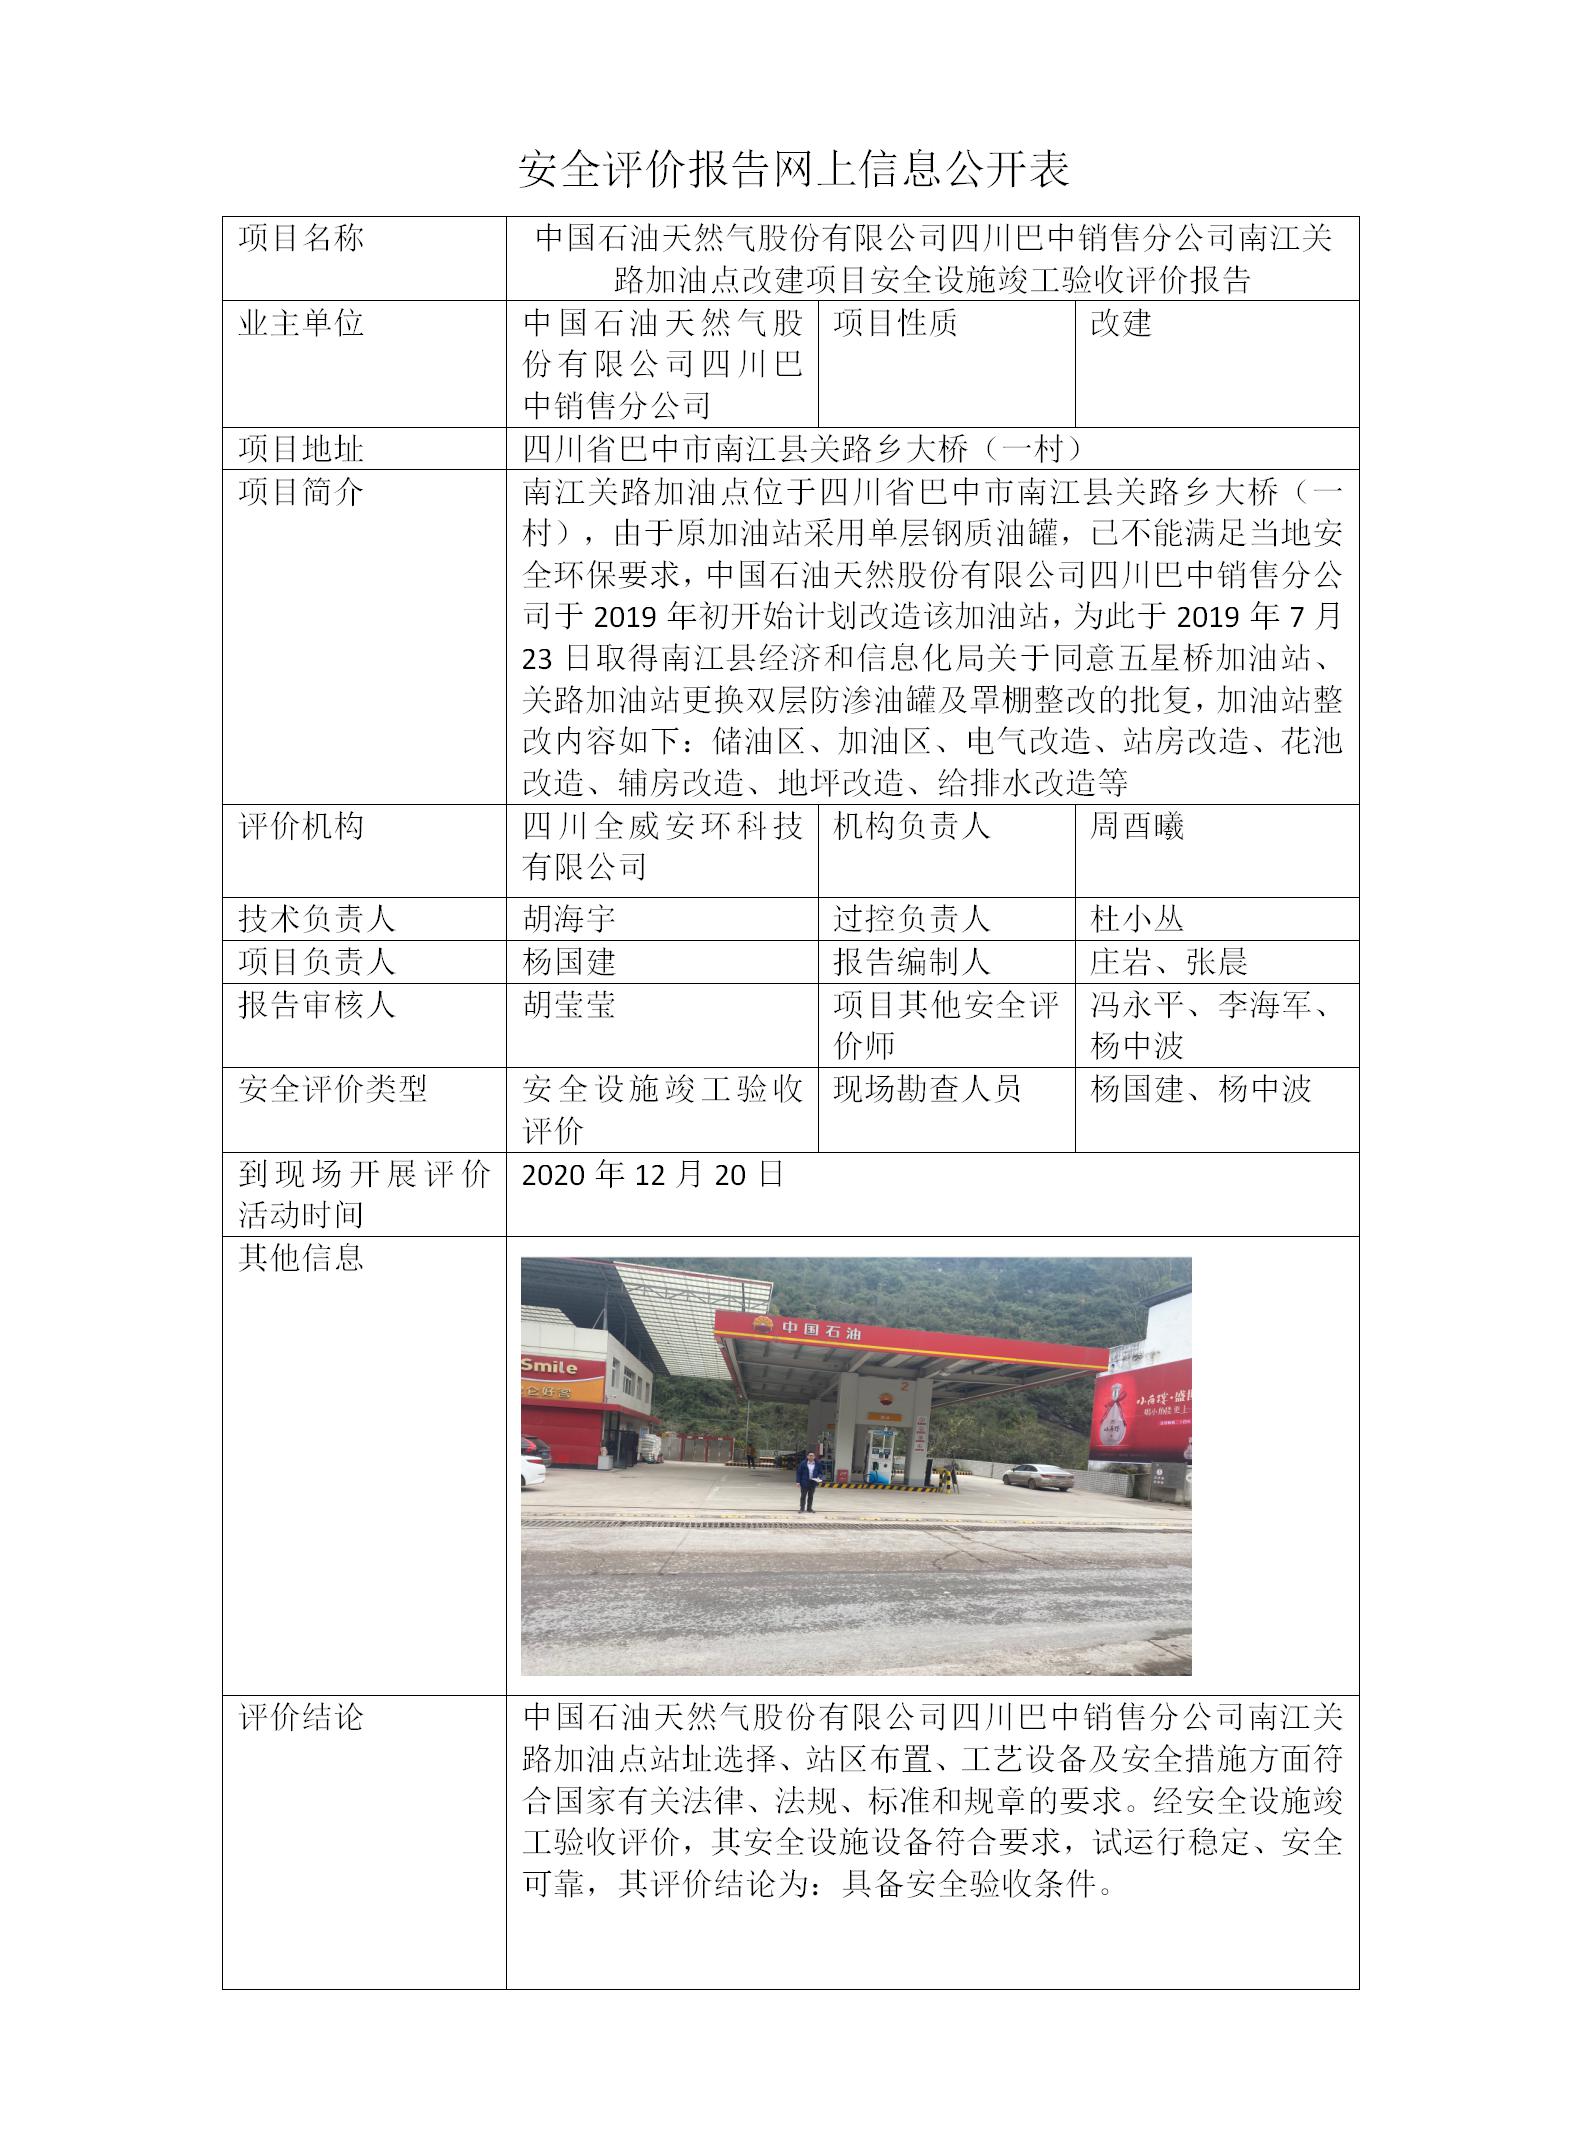 中国石油天然气股份有限公司四川巴中销售分公司南江关路加油点改建项目安全设施竣工验收评价报告